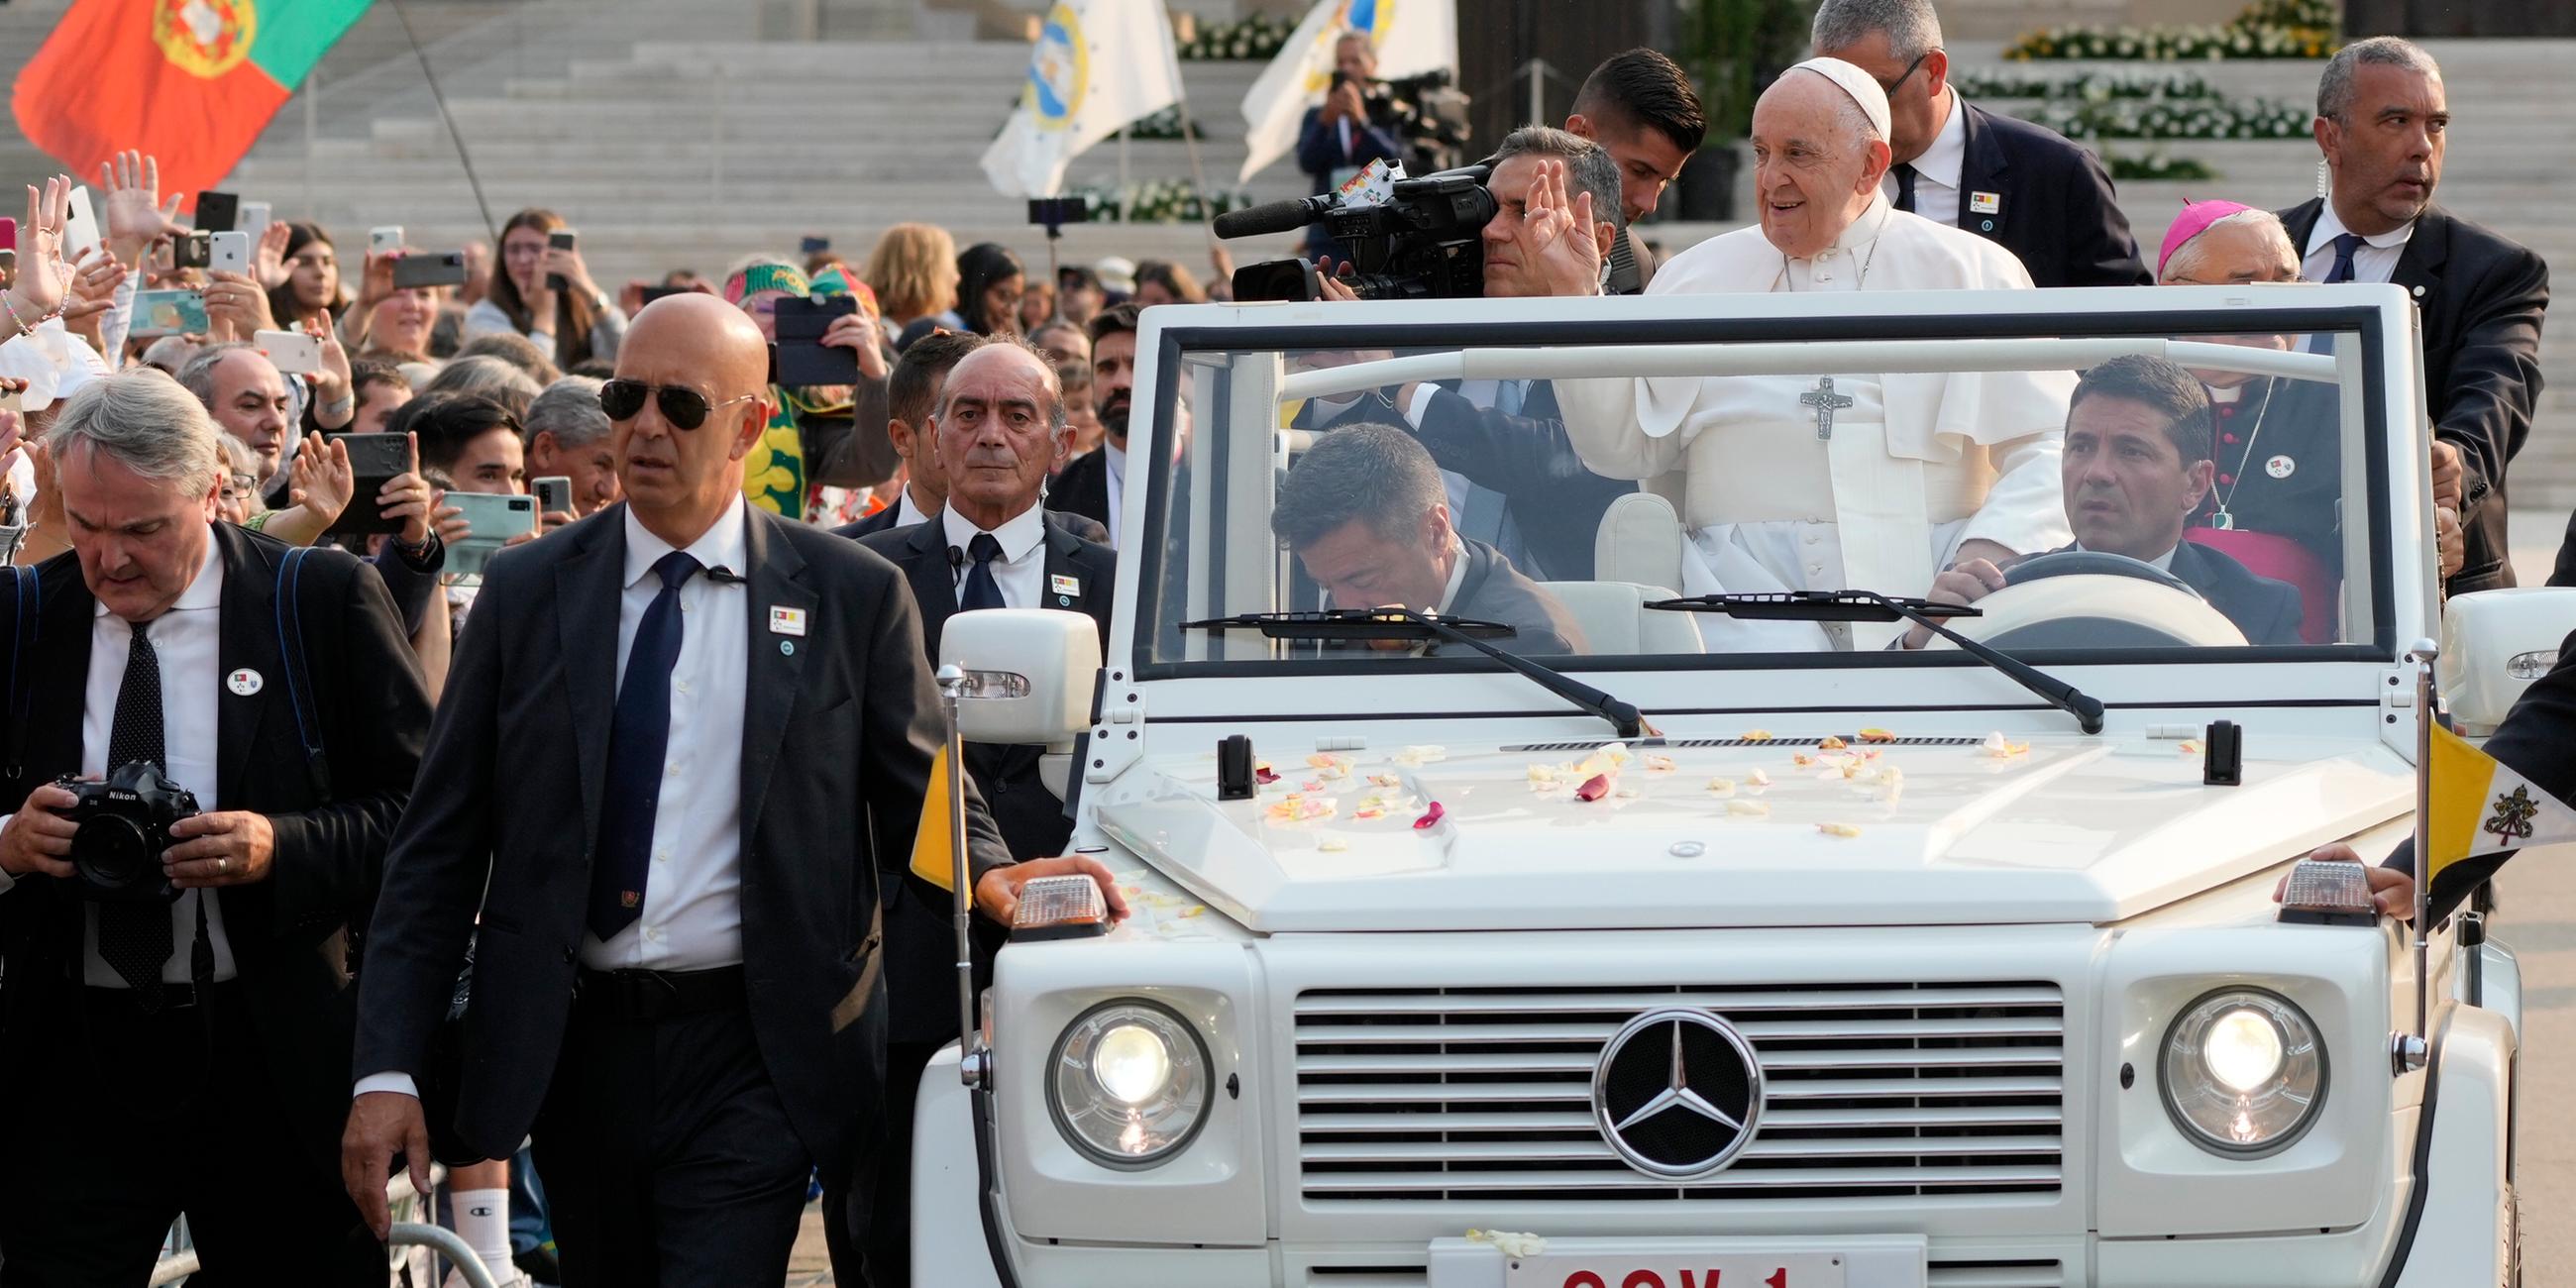 Papst in weißem Auto umgeben von Menschen